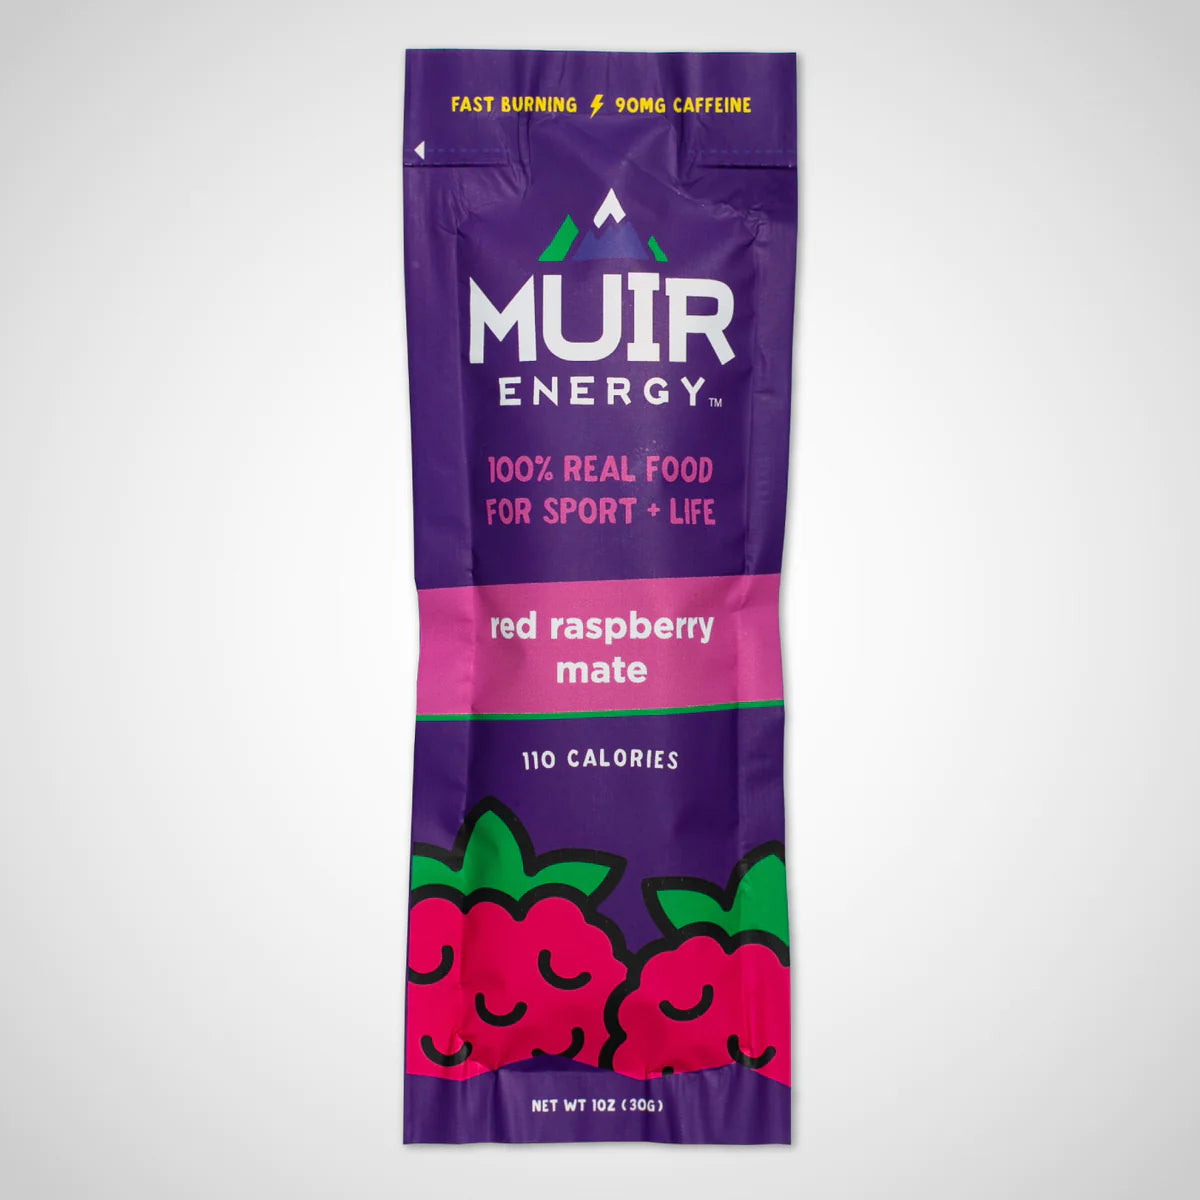 Muir Energy - Fast Burn Gels